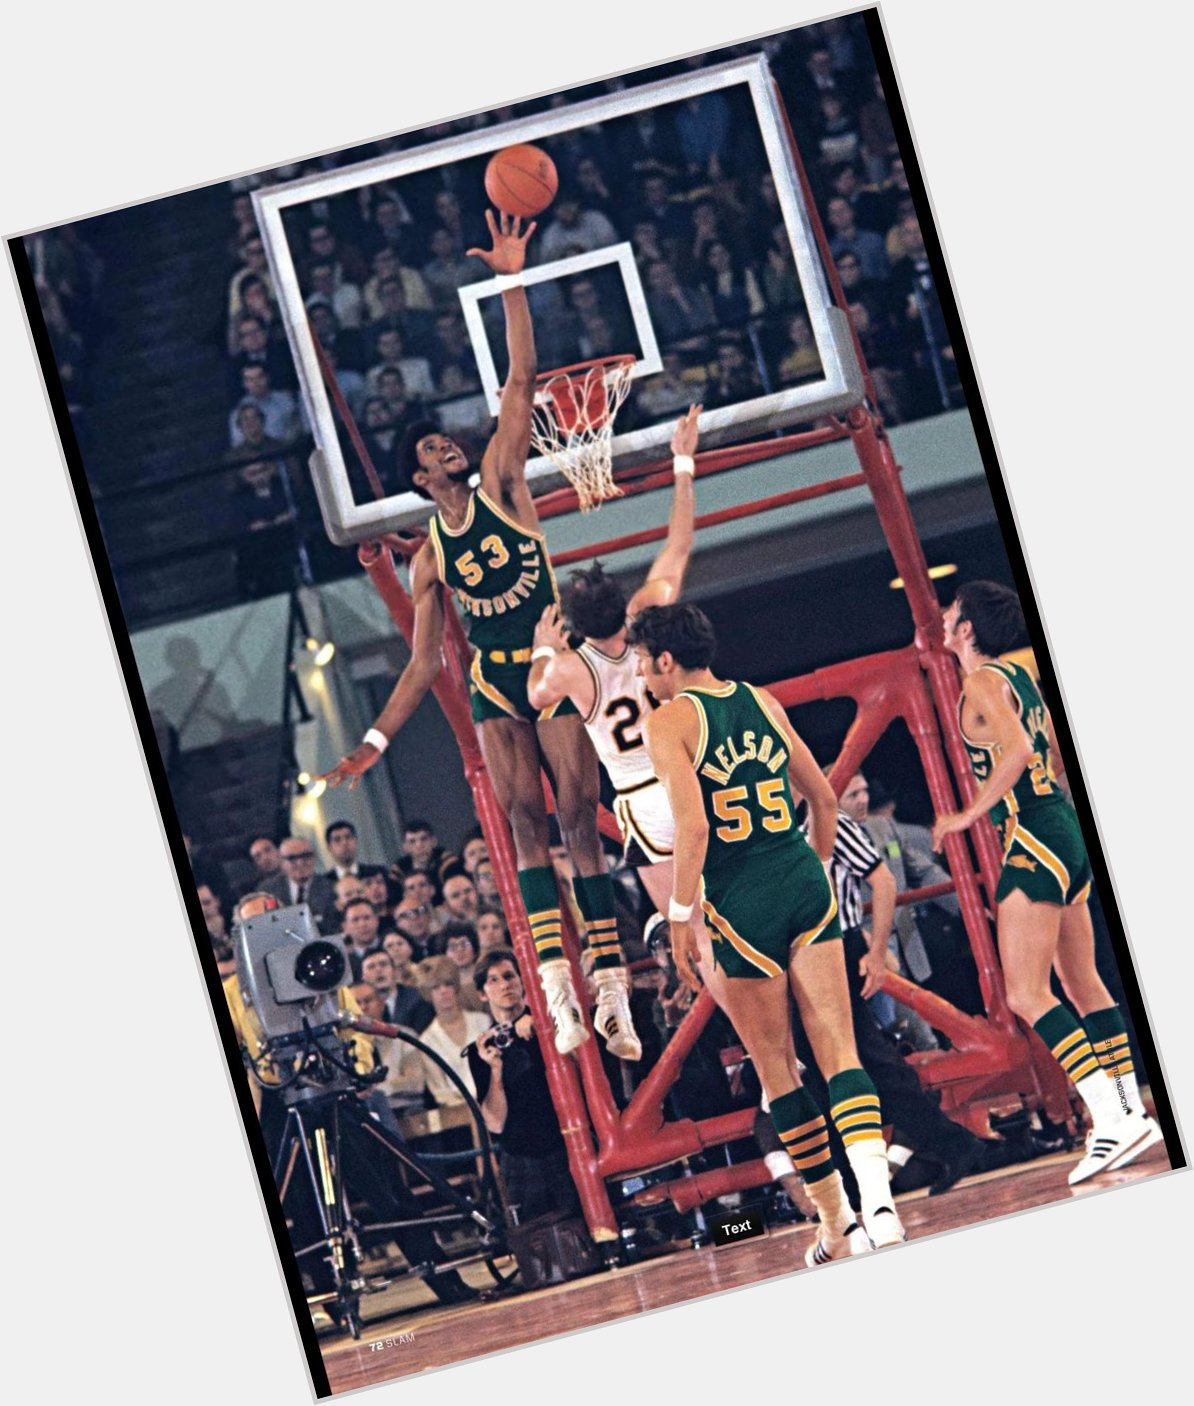 Happy Birthday 
Artis Gilmore. 

6x NBA AllStar, 5x ABA AllStar, Basketball Hall of Famer. 